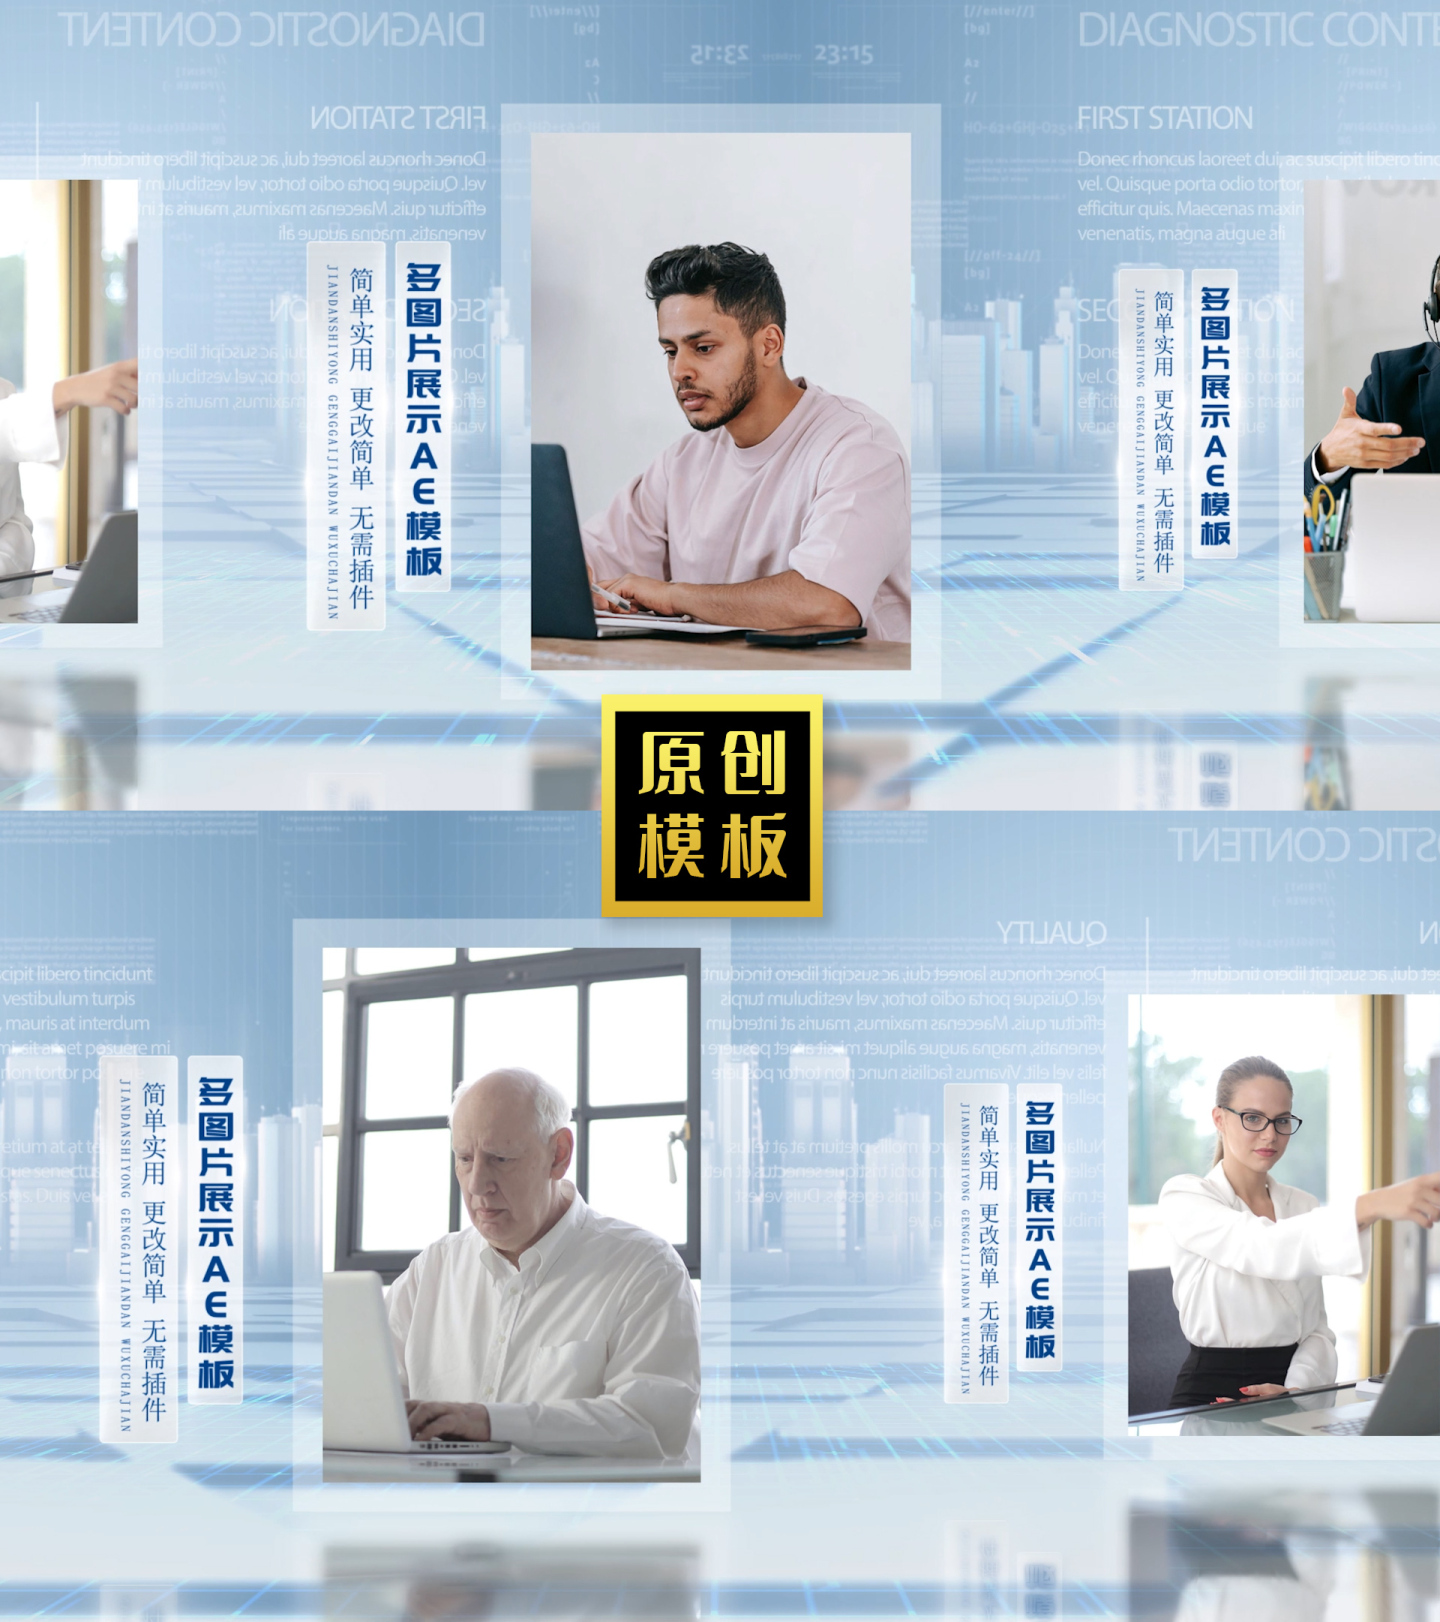 明亮科技企业人物照片包装团队墙展示模板